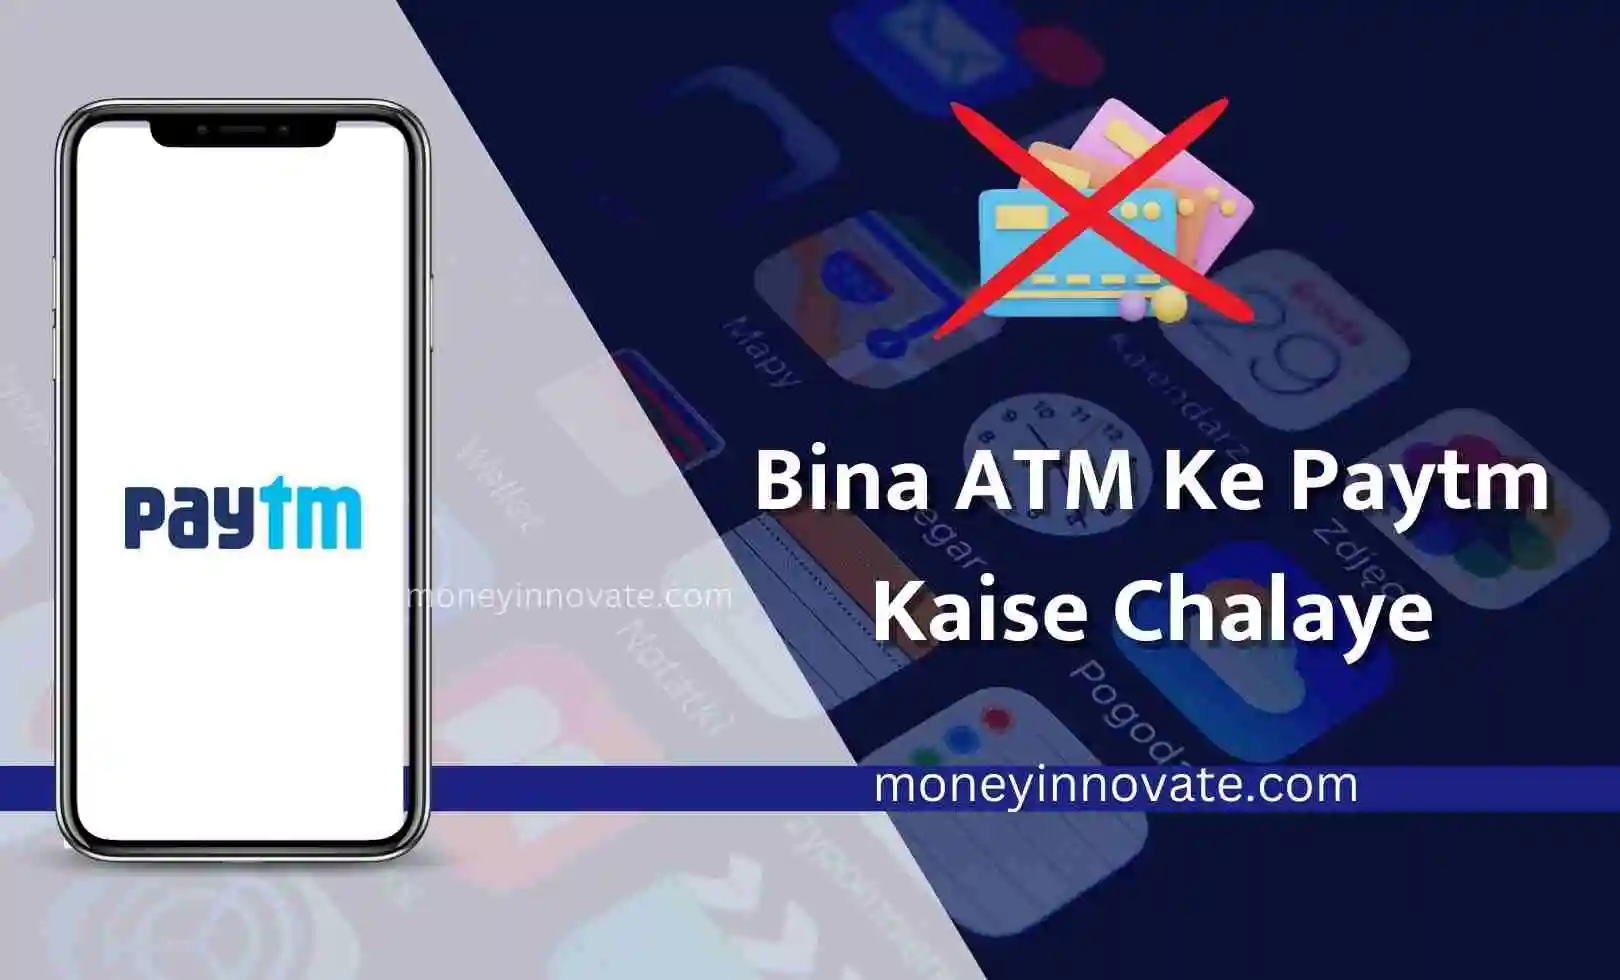 Bina ATM Ke Paytm Kaise Chalaye - बिना एटीएम के पेटीएम कैसे चलाएं